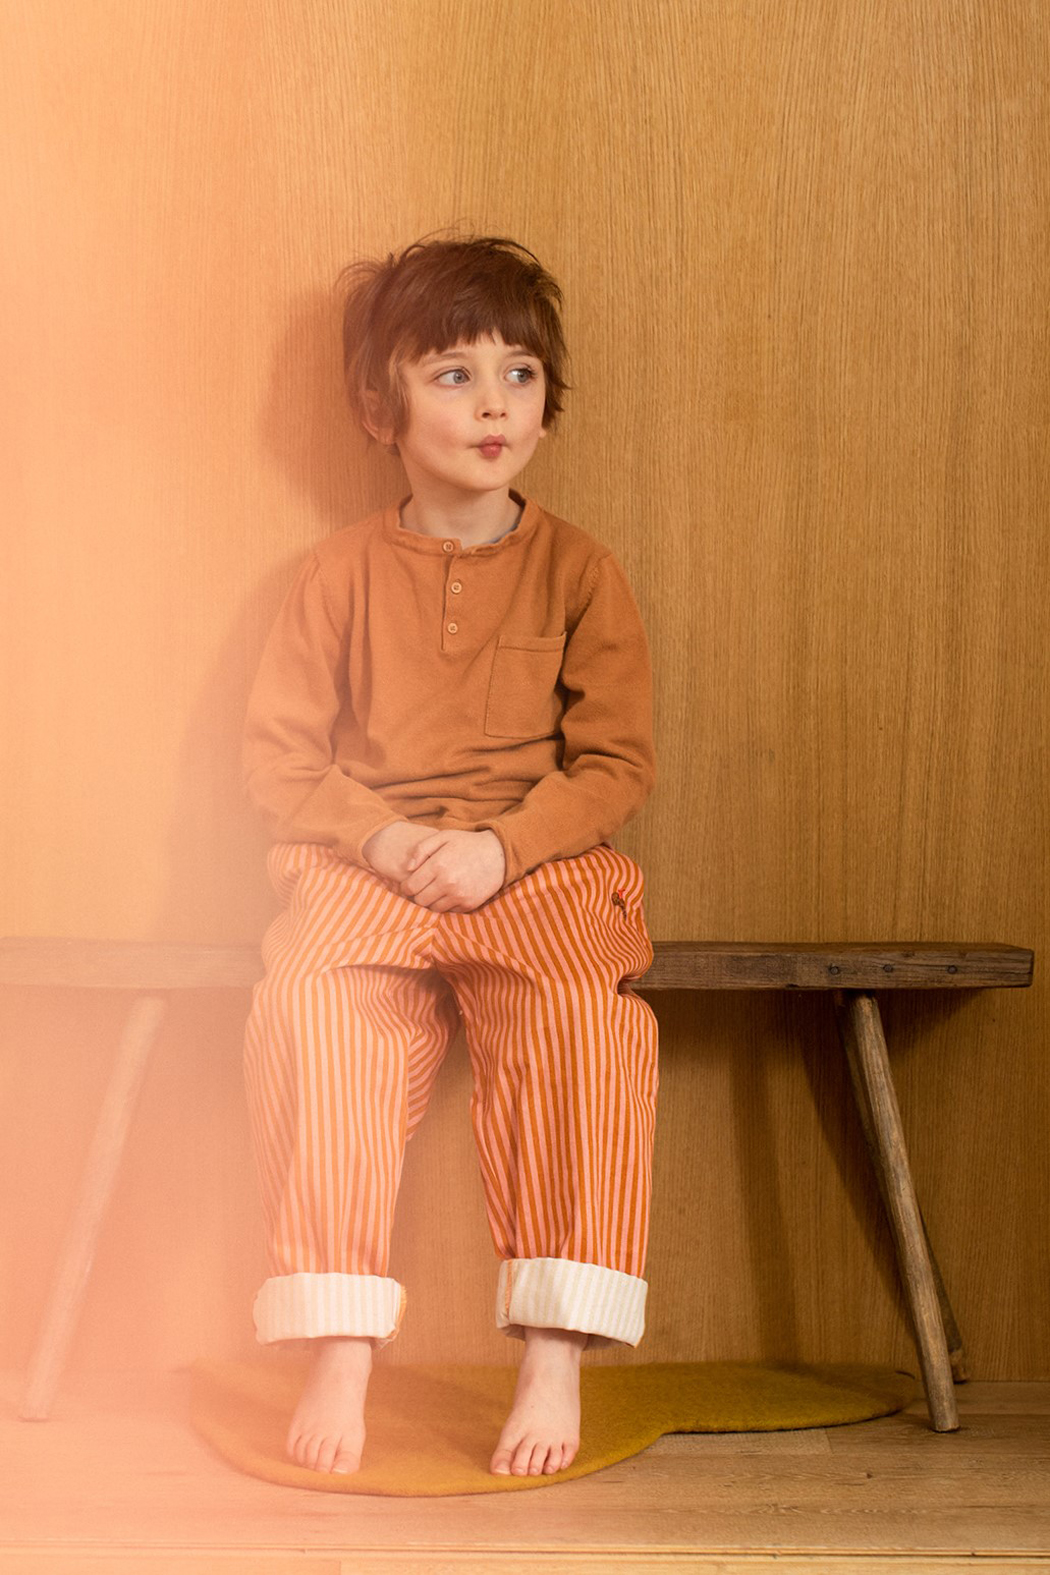 Petit garçon assis sur un banc en bois en pyjama regardant vers la droite